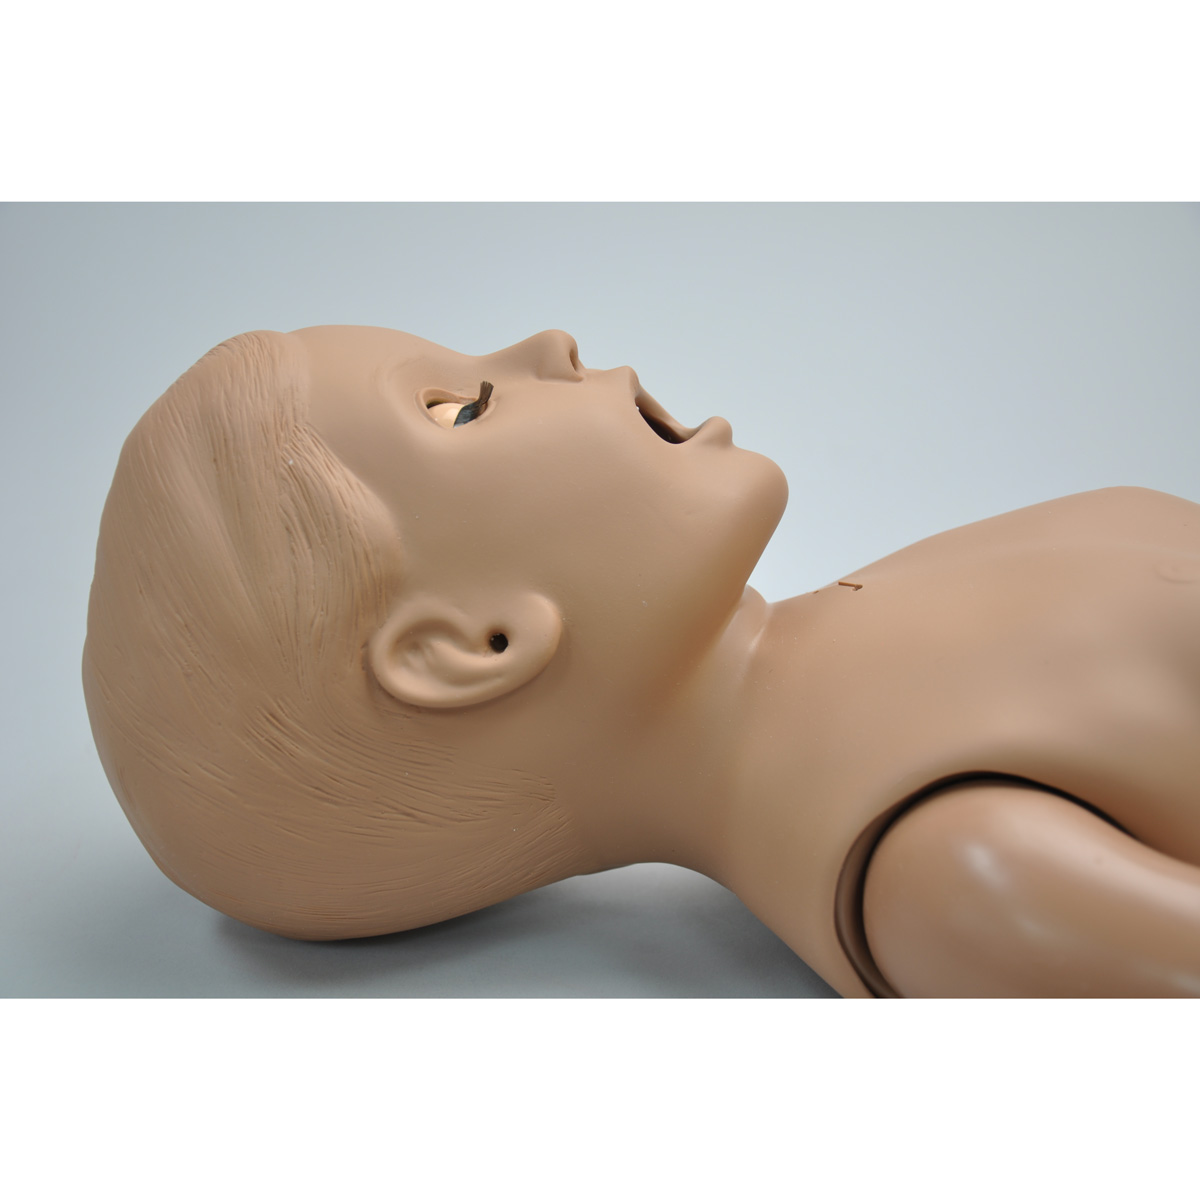 Mannequin de soins du nouveau-né, foncée - 1017862 - Gaumard - S100.D - Les  soins aux patients nouveau-nés - 3B Scientific